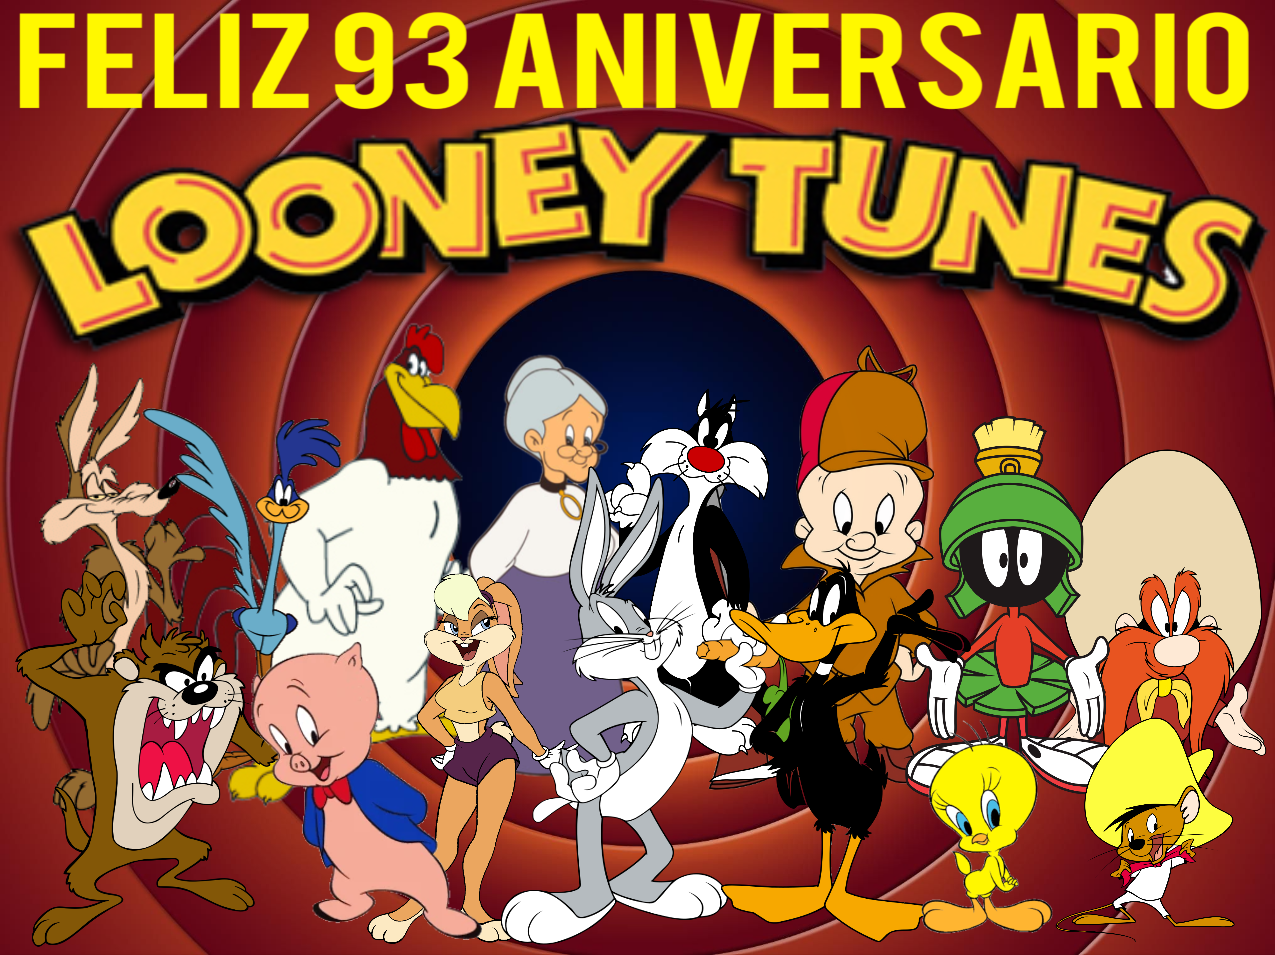 Feliz 93 Aniversario Looney Tunes ( 2023 ) by Luissandoval2002 on